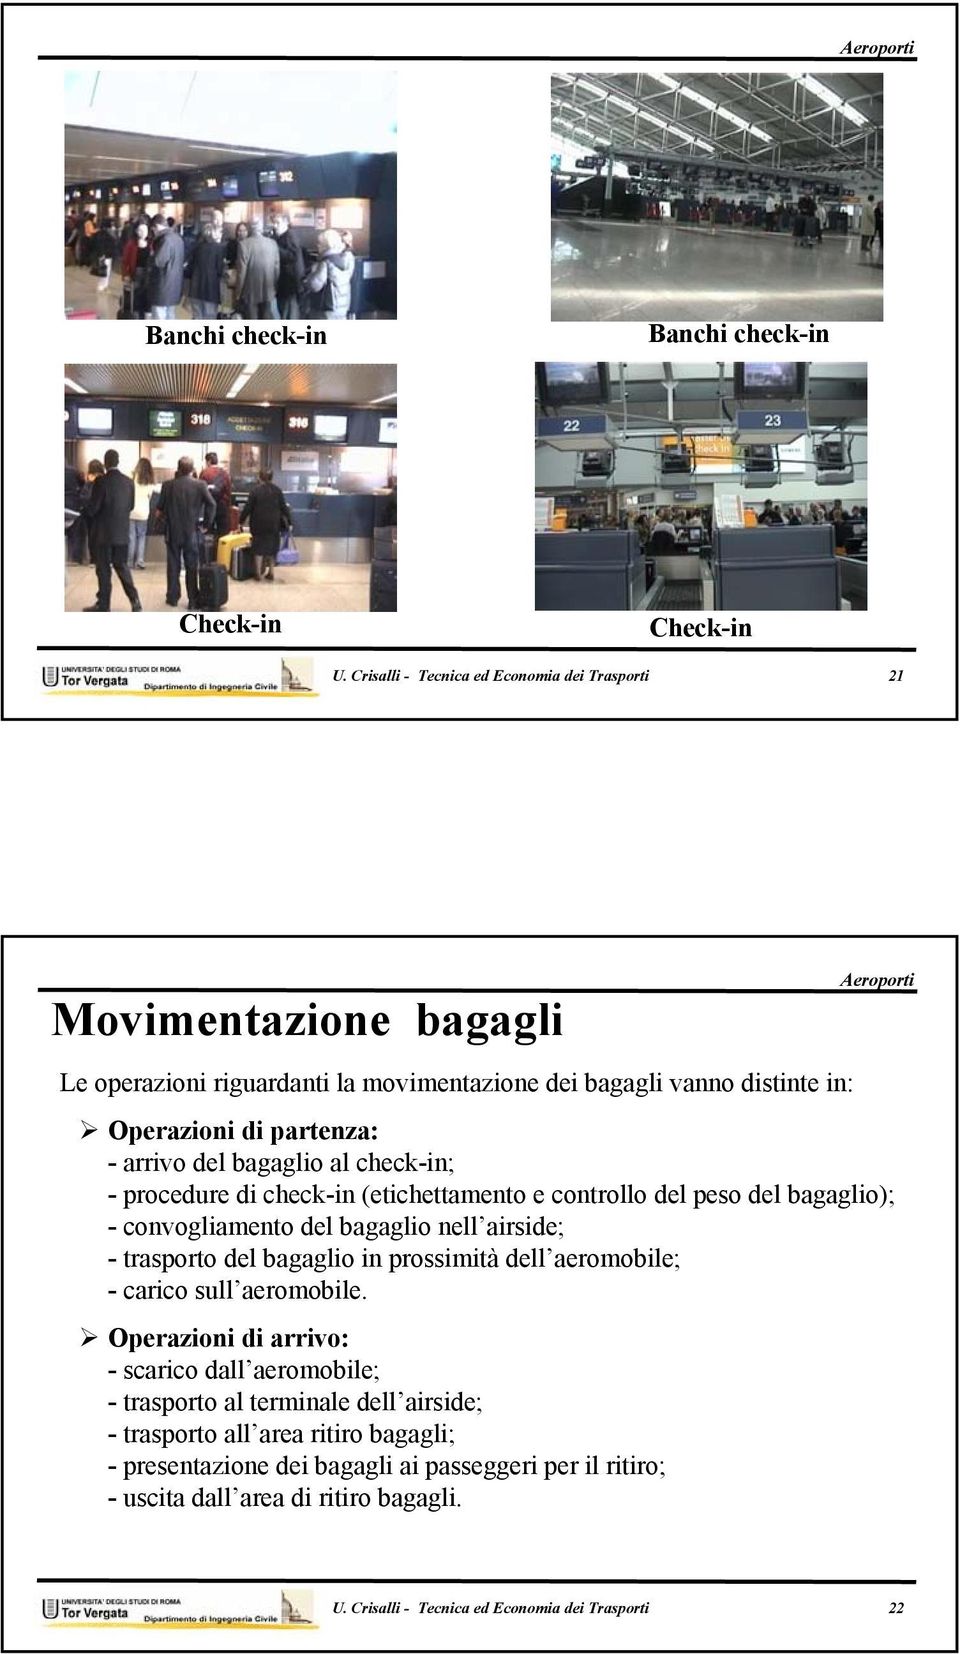 bagaglio al check-in; - procedure di check-in (etichettamento e controllo del peso del bagaglio); - convogliamento del bagaglio nell airside; - trasporto del bagaglio in prossimità